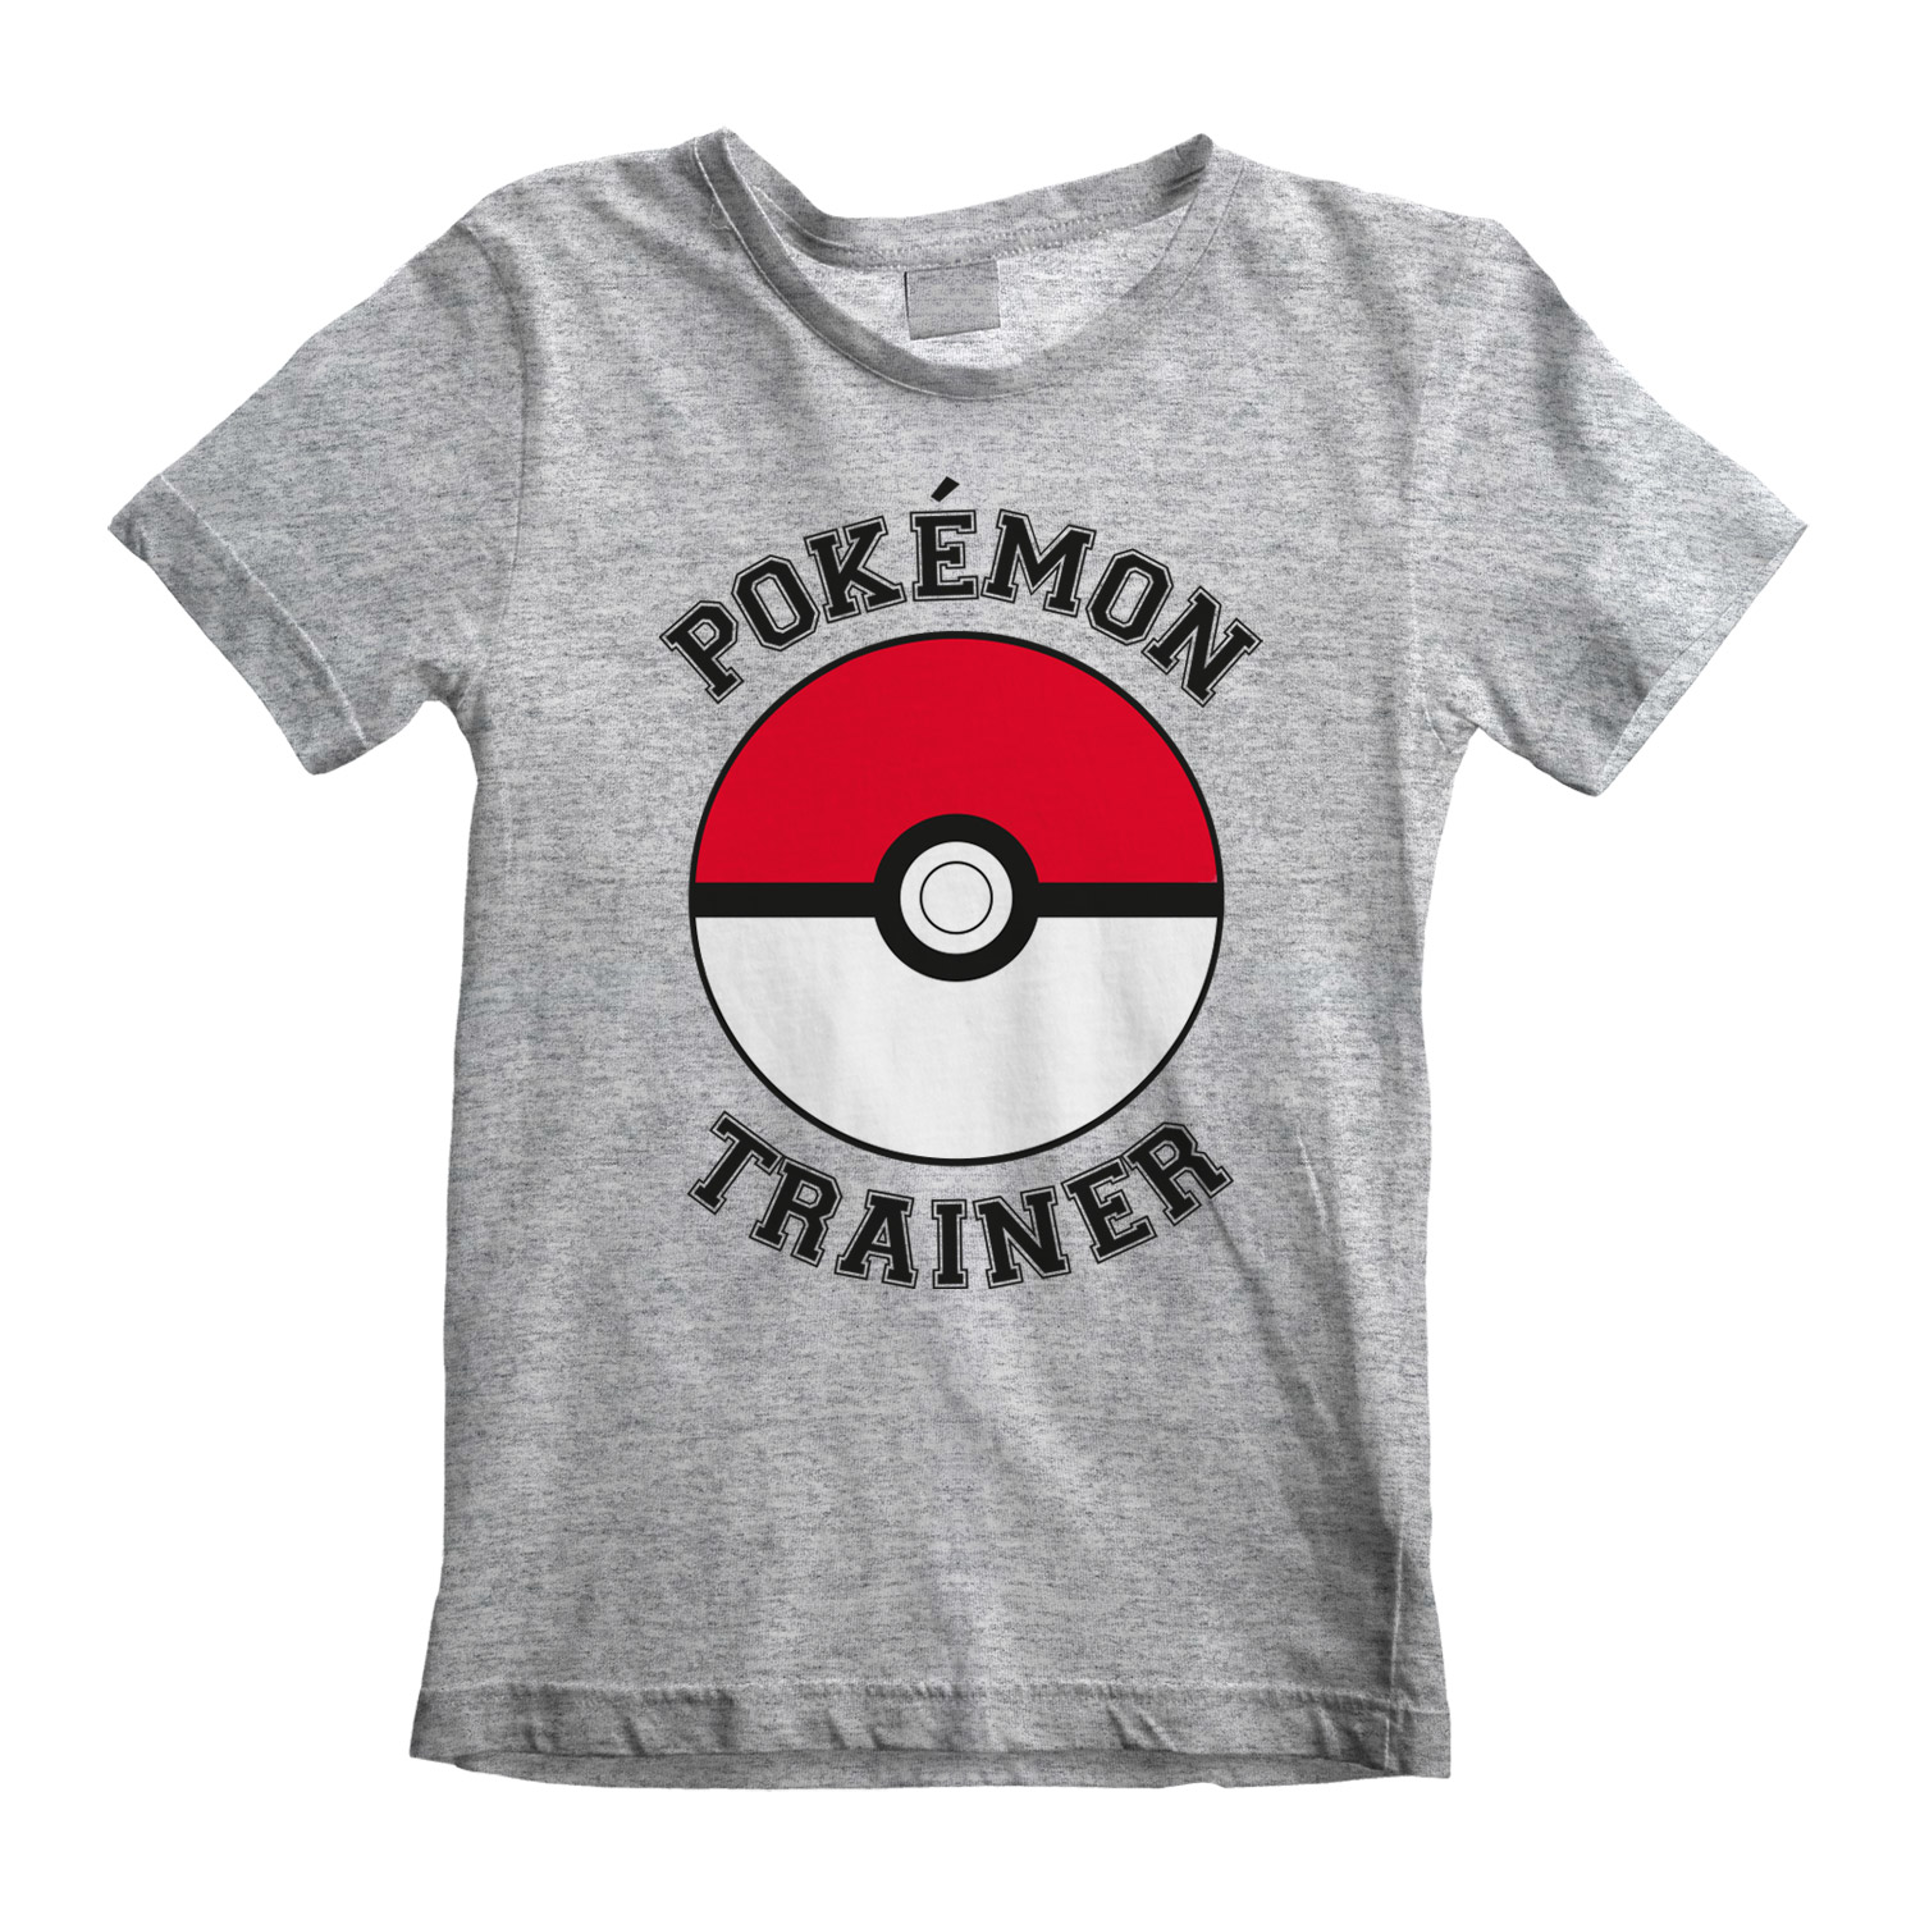 Nintendo - T-shirt Enfant Gris chiné Pokémon Entraîneur - 3-4 ans